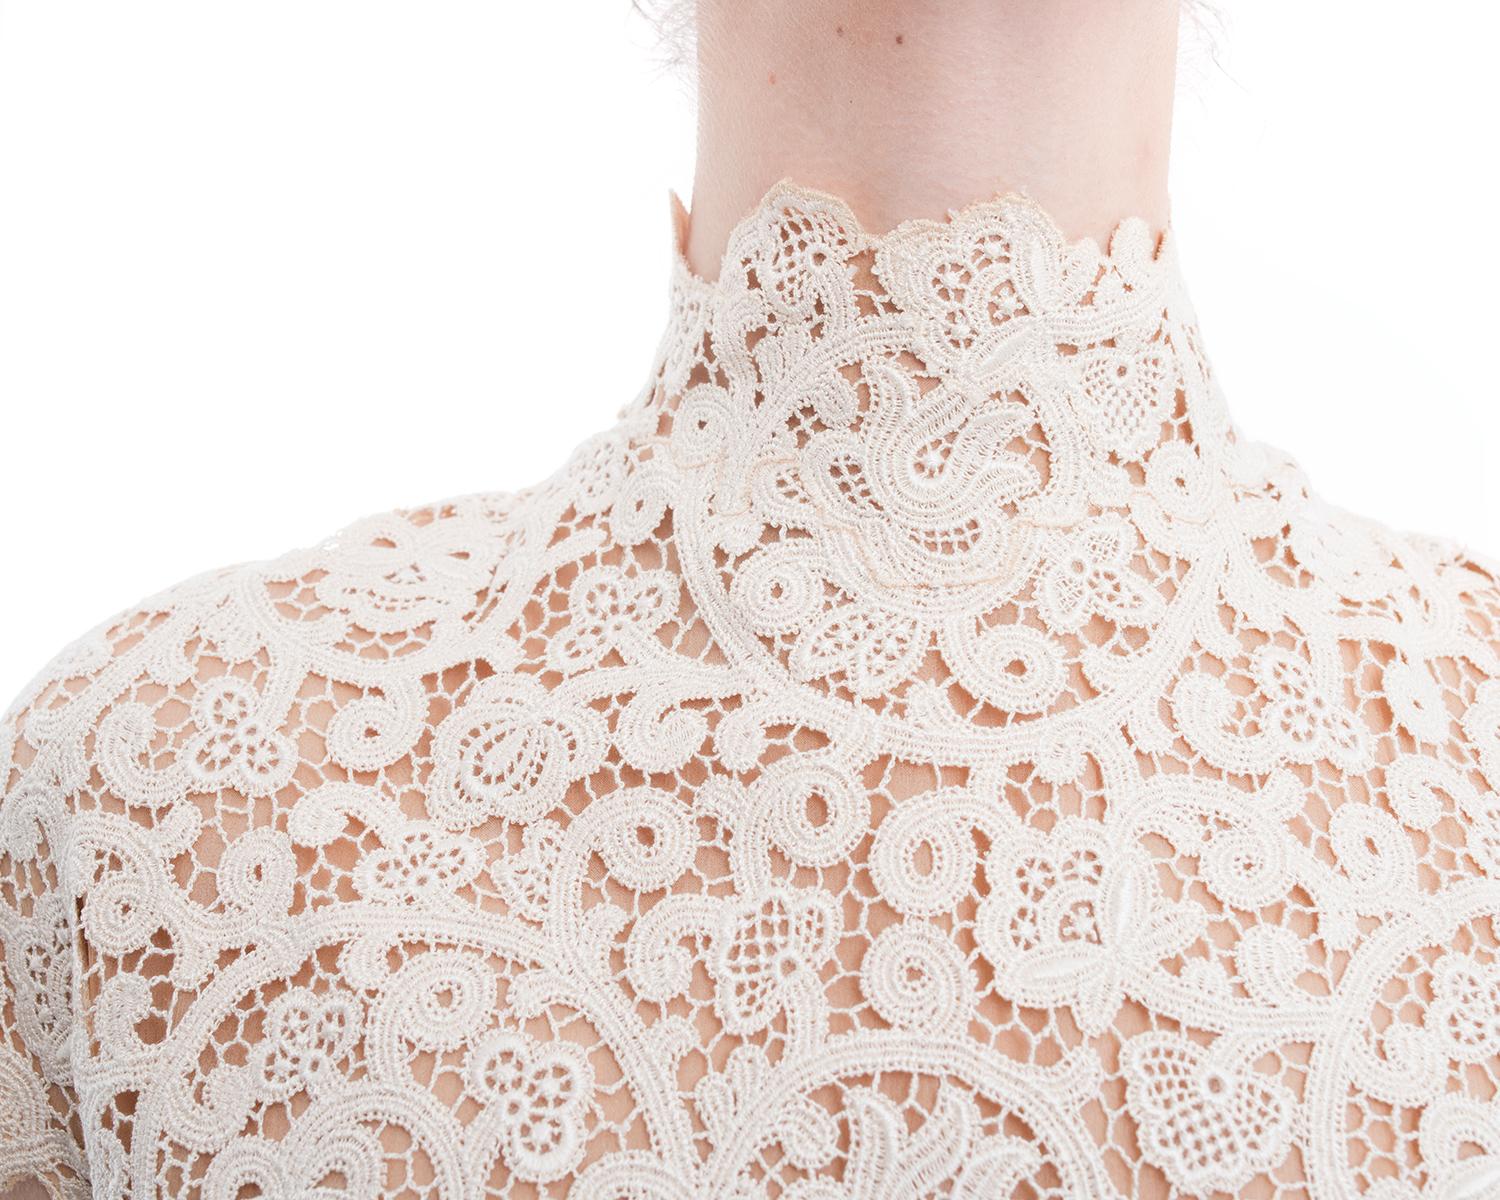 Pierre Balmain by Oscar de la Renta Haute Couture Ivory Lace Gown 1